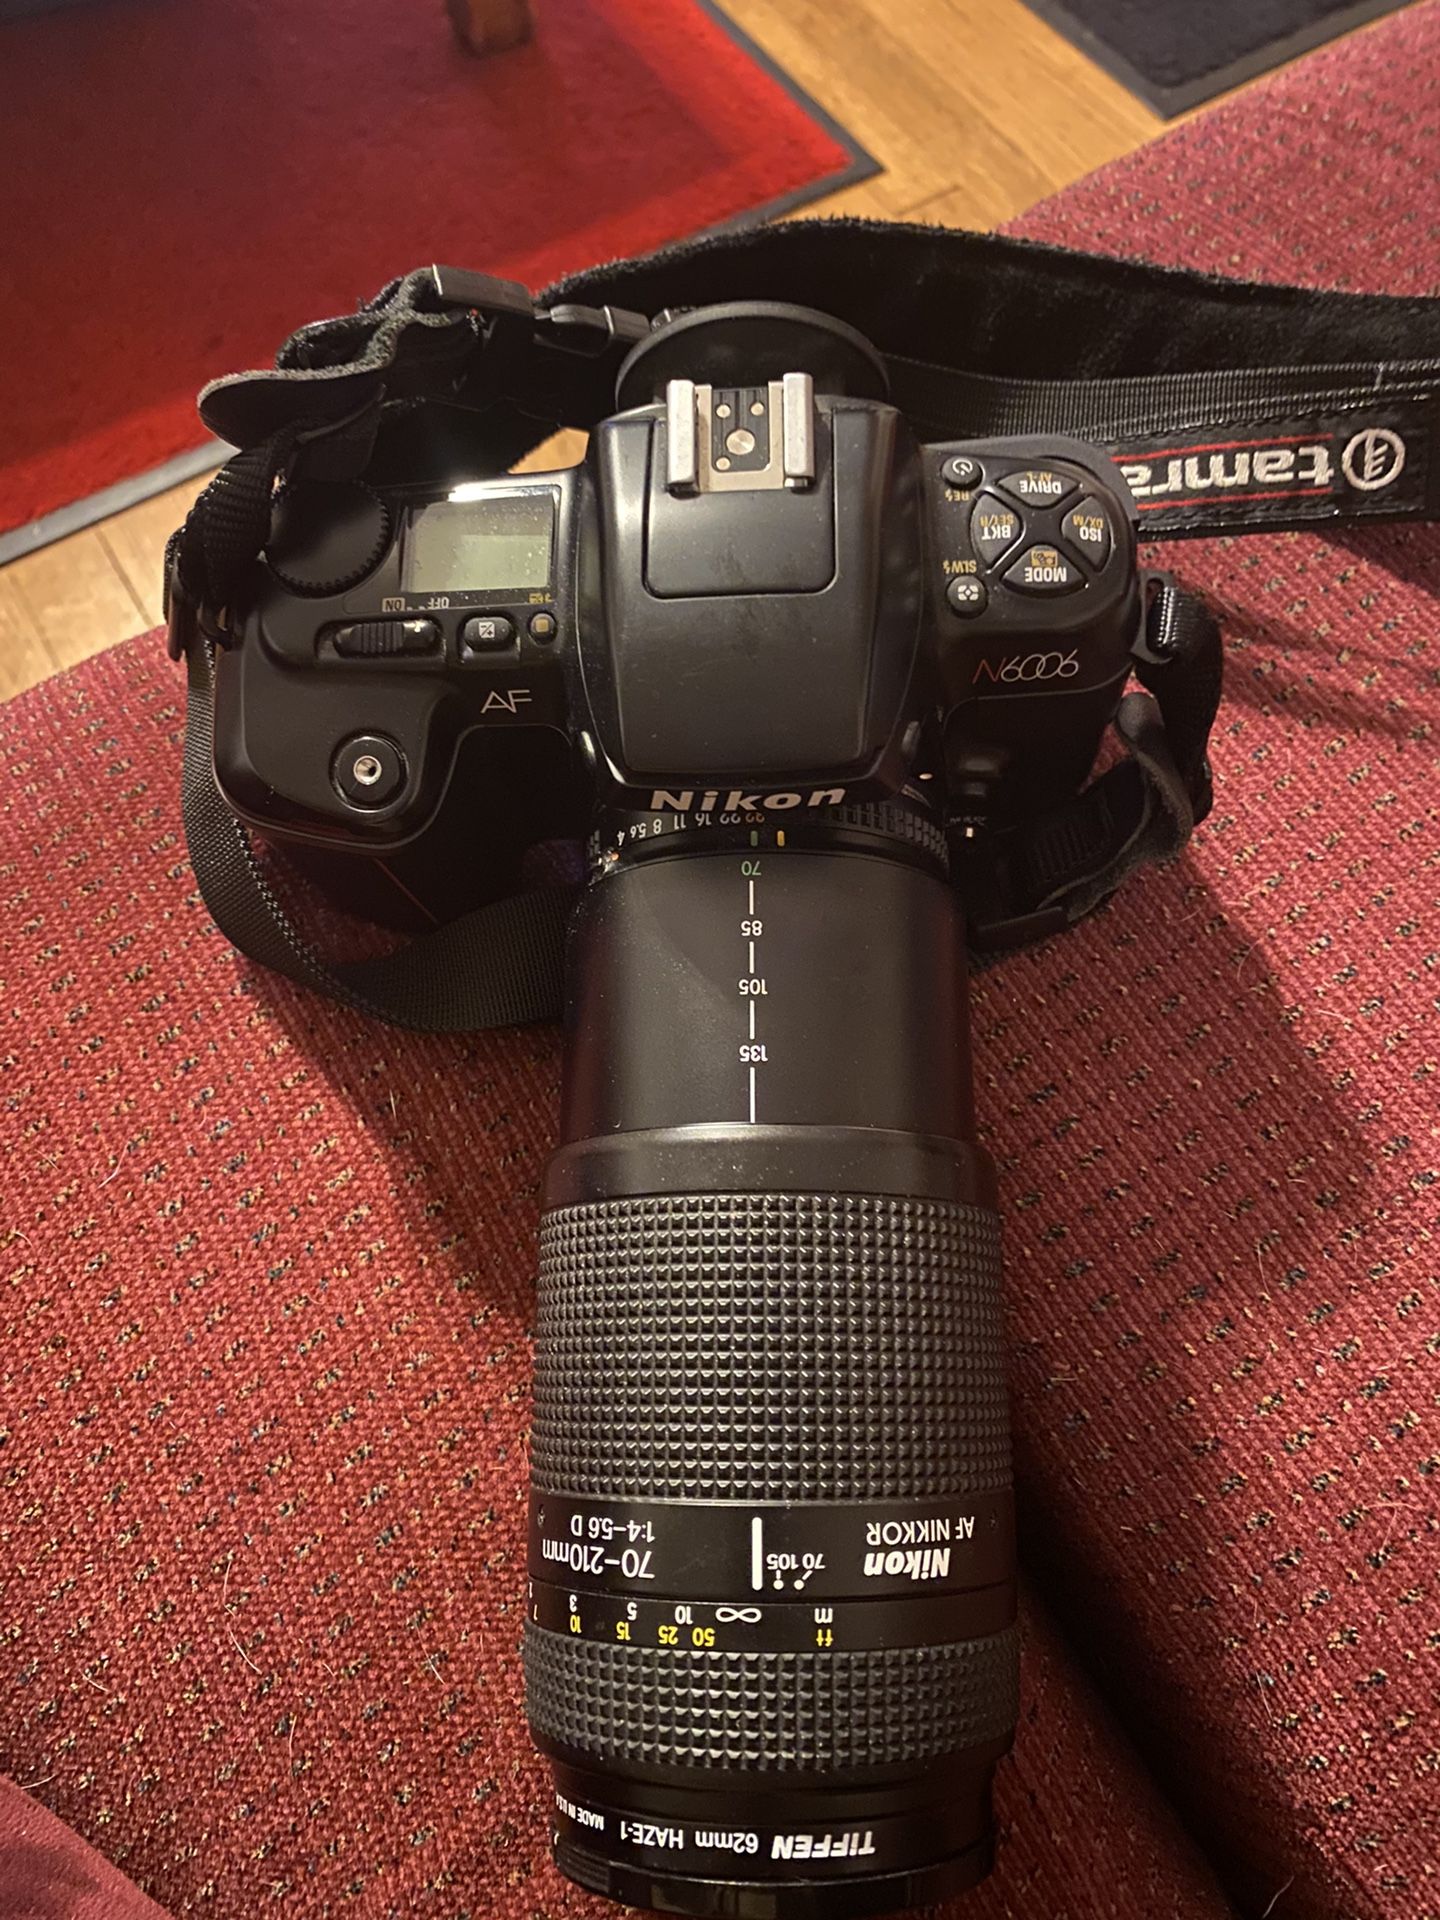 Nikon AF N6006 camera with Nikon AF Nikkor 70-210mm len